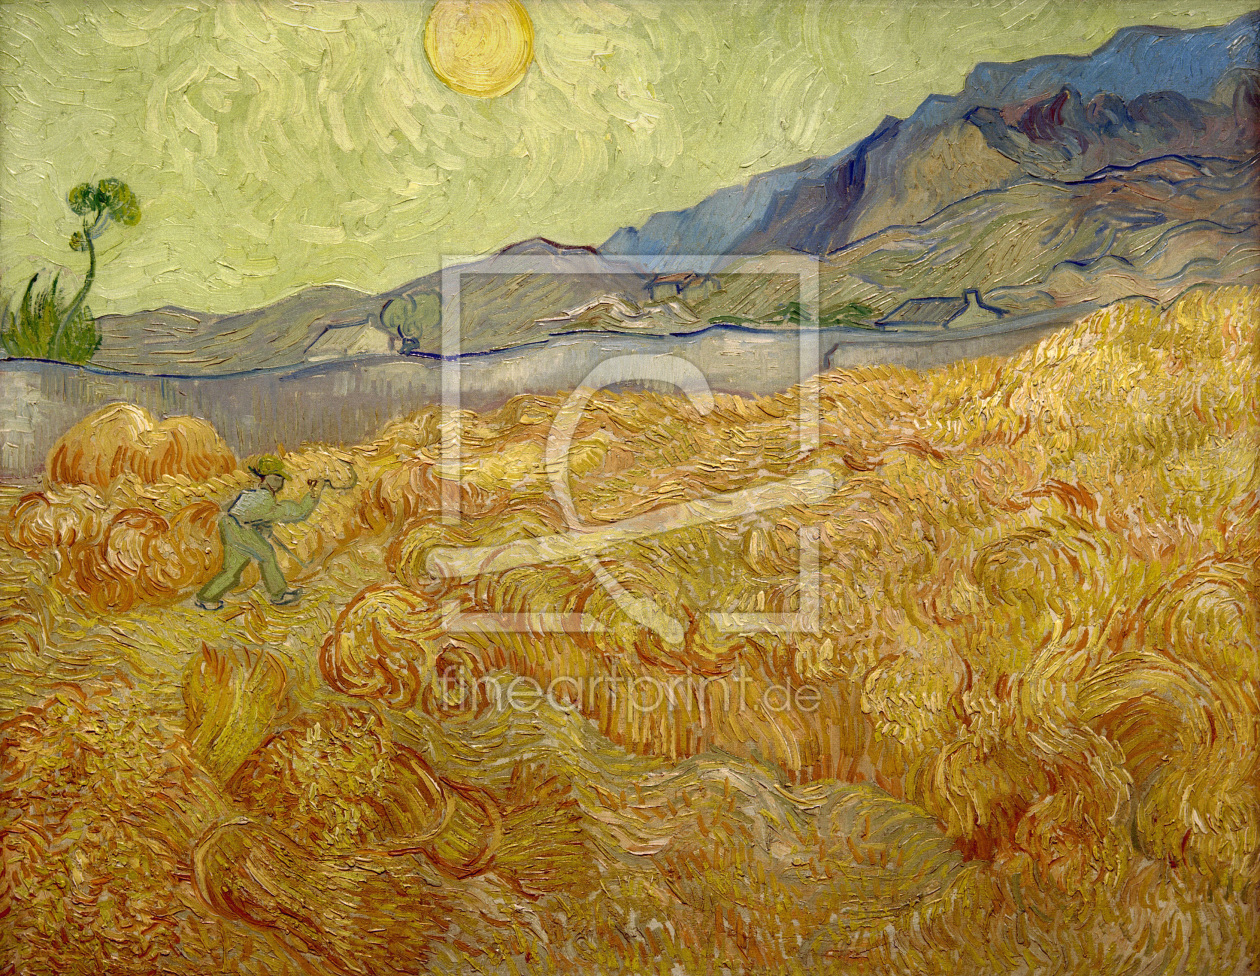 Bild-Nr.: 30003274 Van Gogh / Wheatfield with Reaper / 1889 erstellt von van Gogh, Vincent